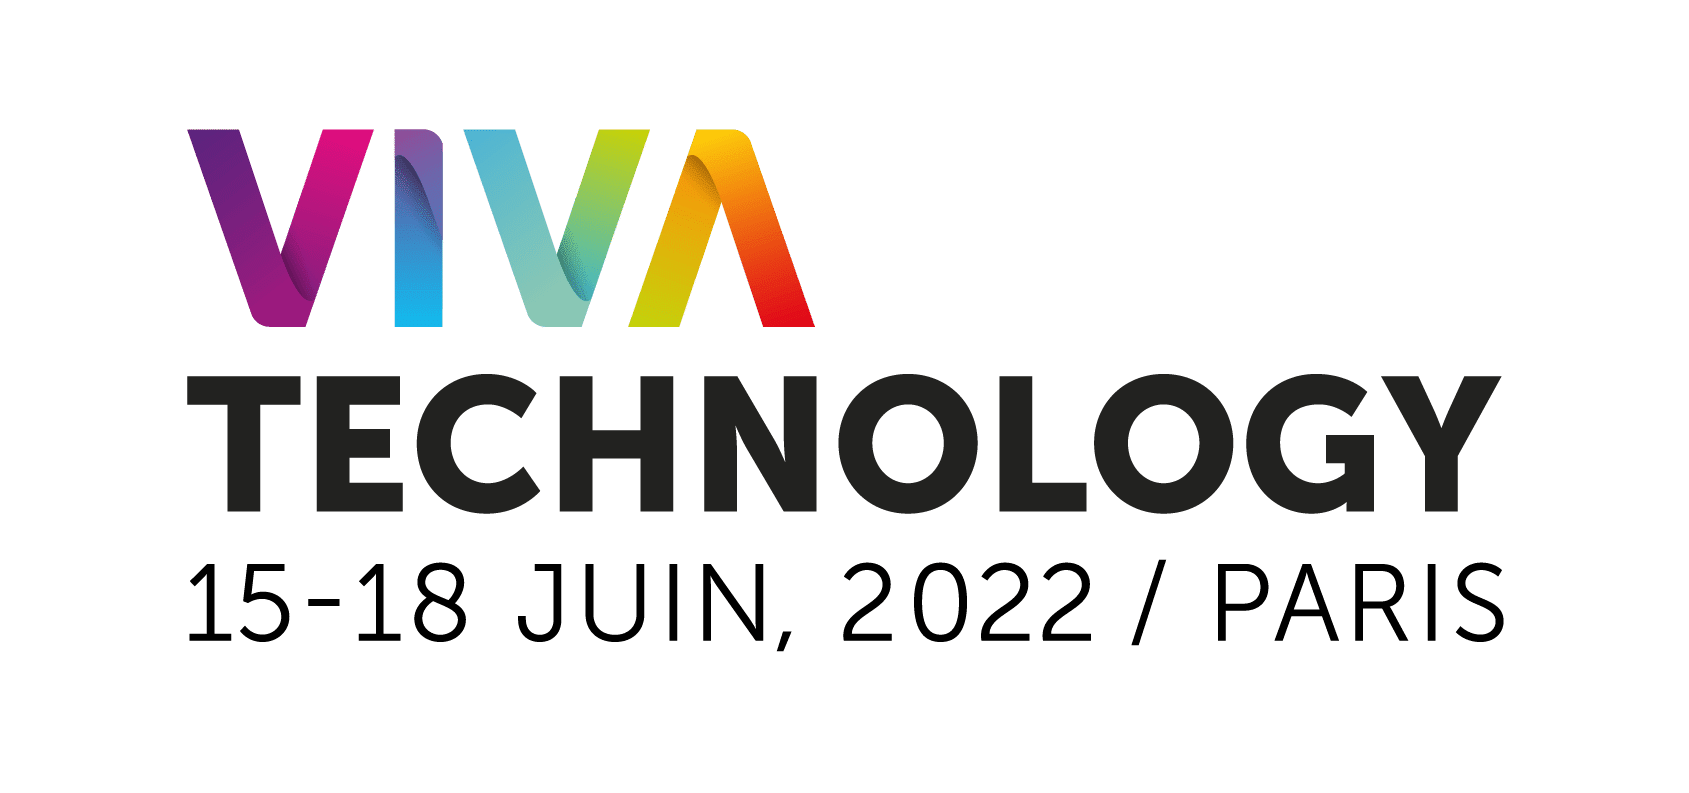 Vivatech 2022